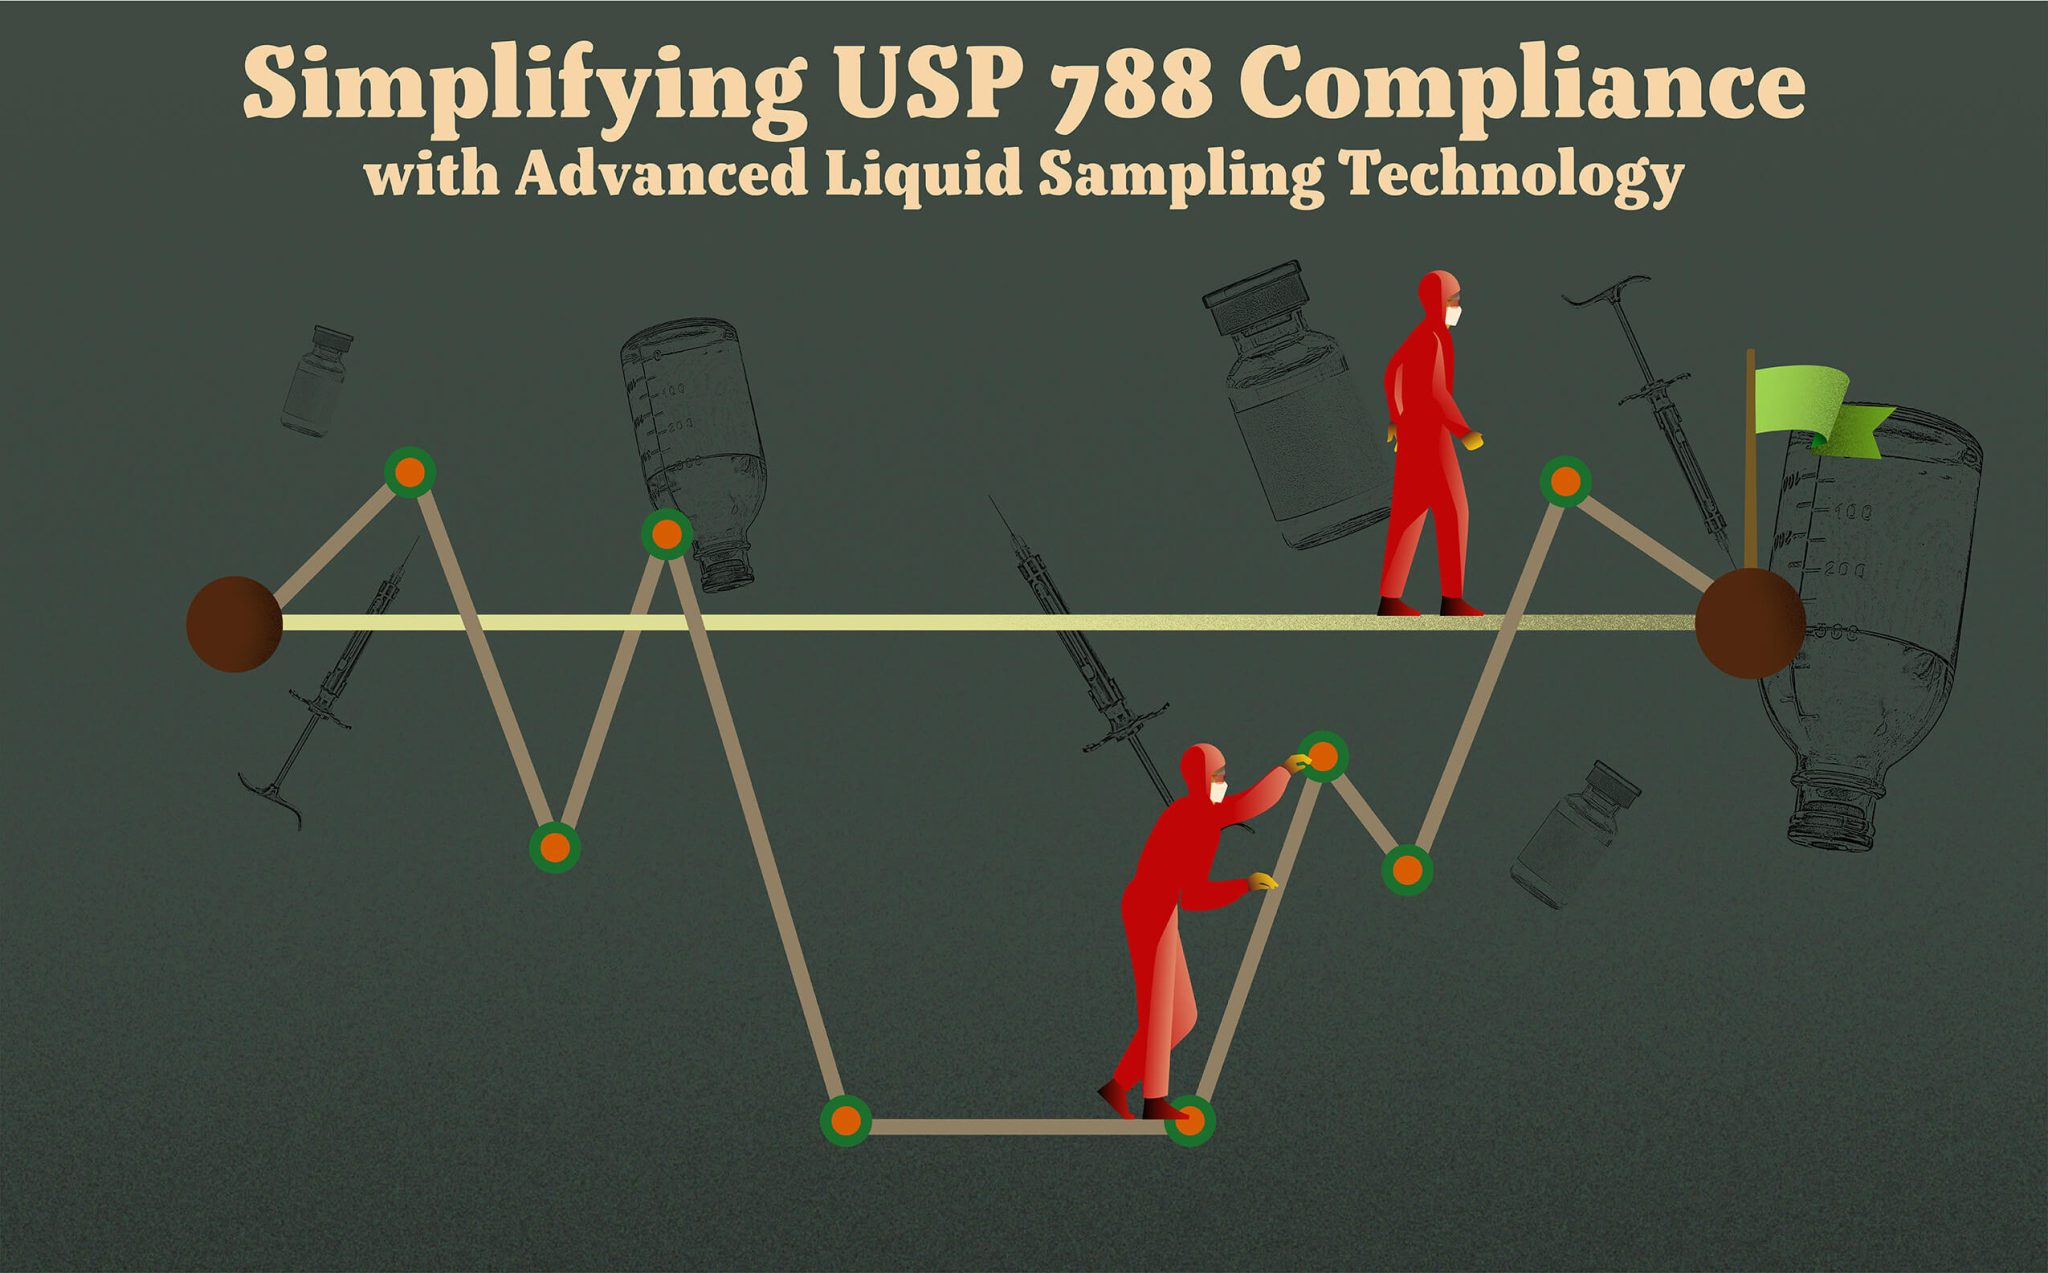 Simplifying USP 788